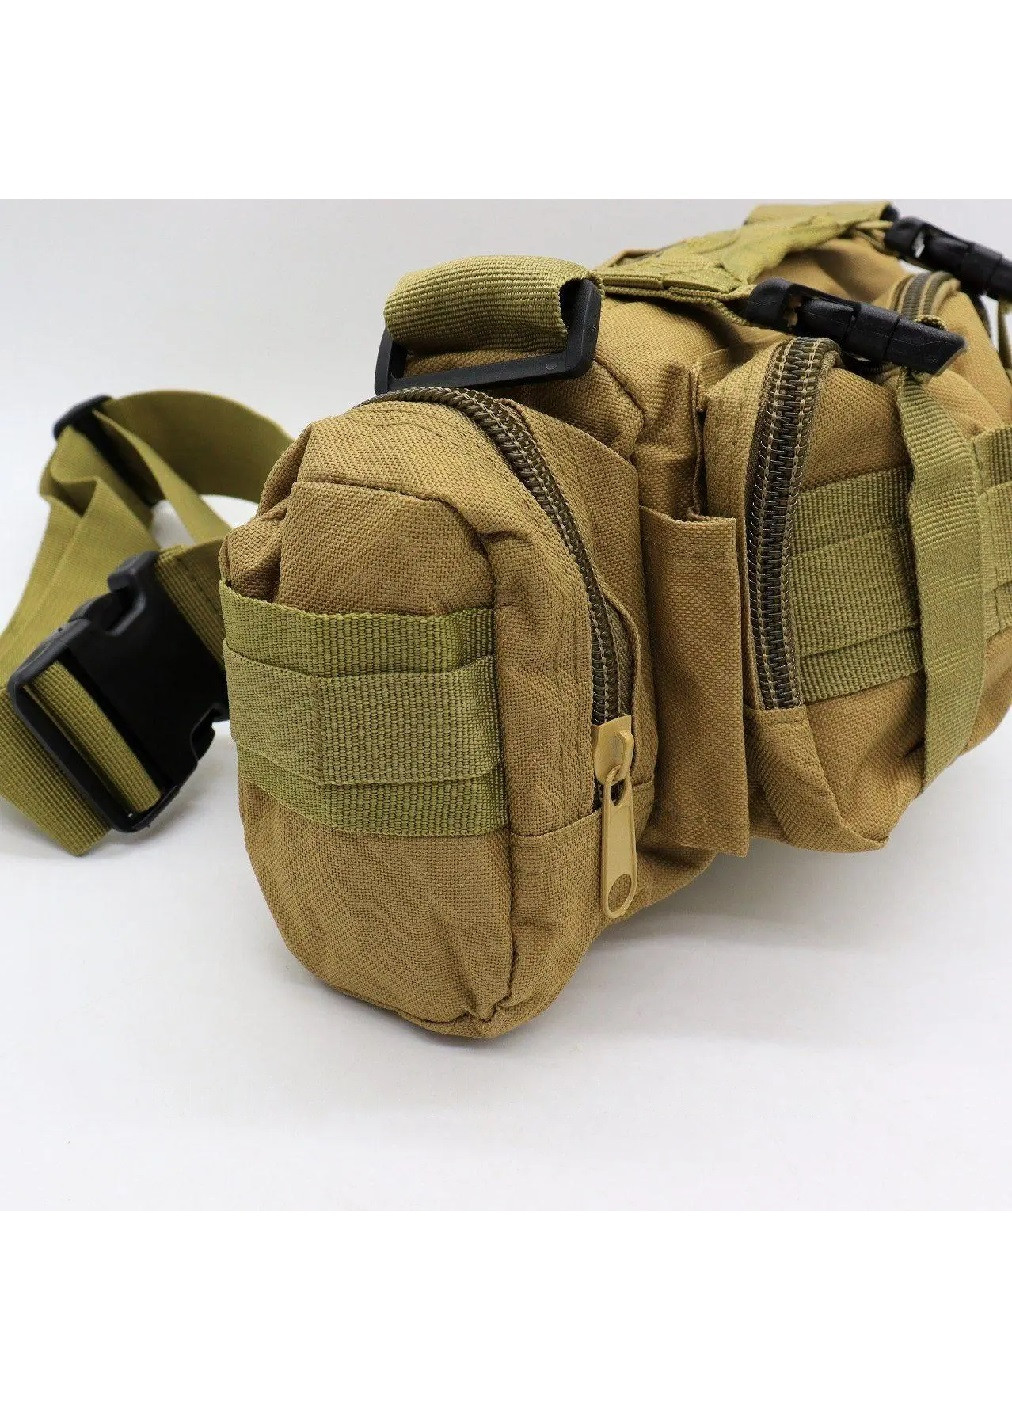 Тактическая сумка через плечо компактная армейская для рыбалки охоты туризма на 5 л 35х14х18 см (474205-Prob) Песочная Unbranded (257597018)